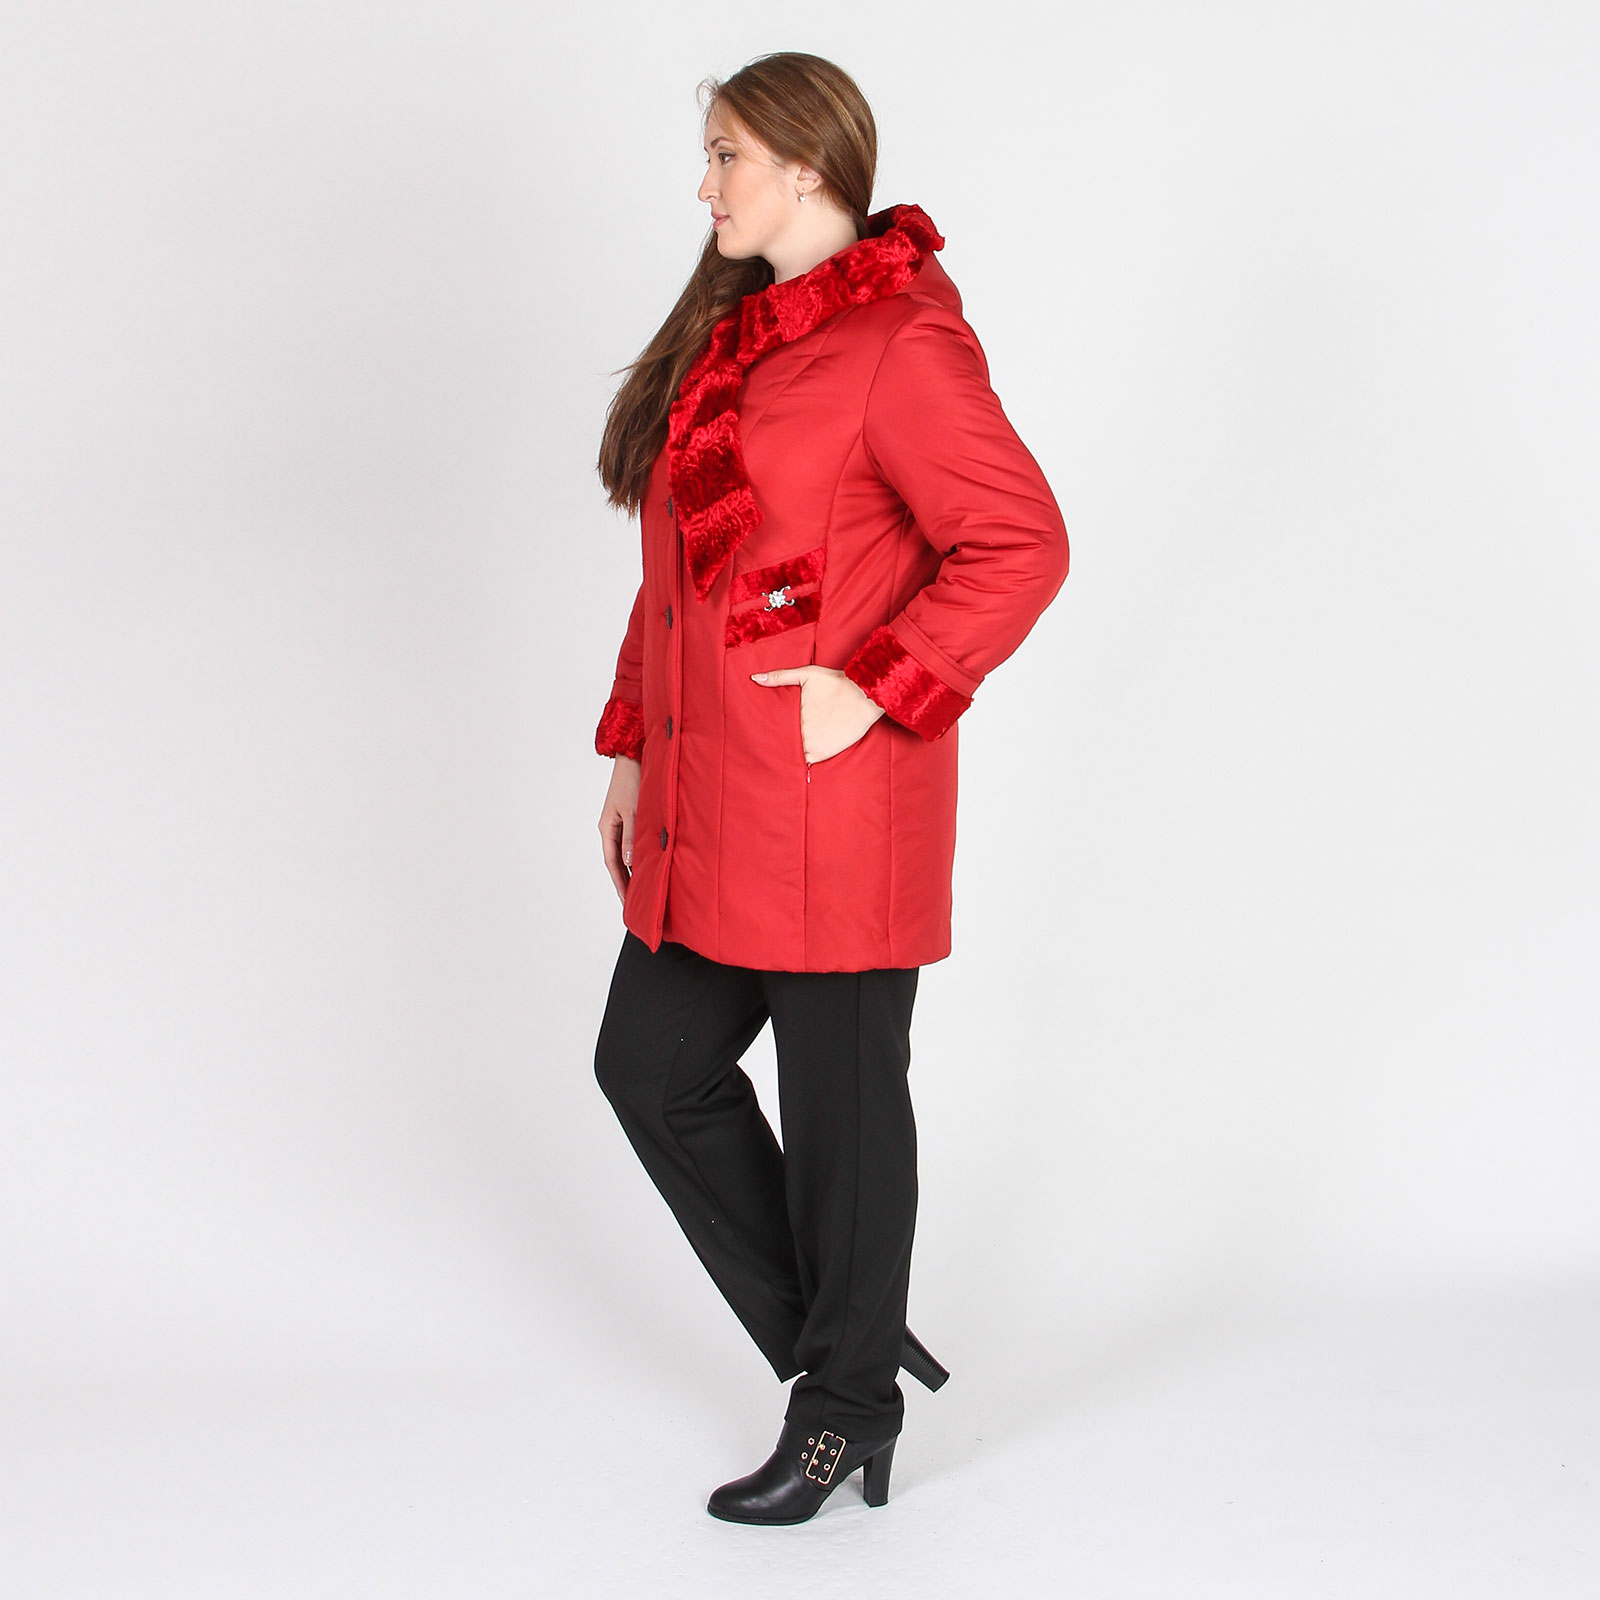 Куртка с декоративными вставками Mio Imperatrice, размер 60, цвет красный - фото 4